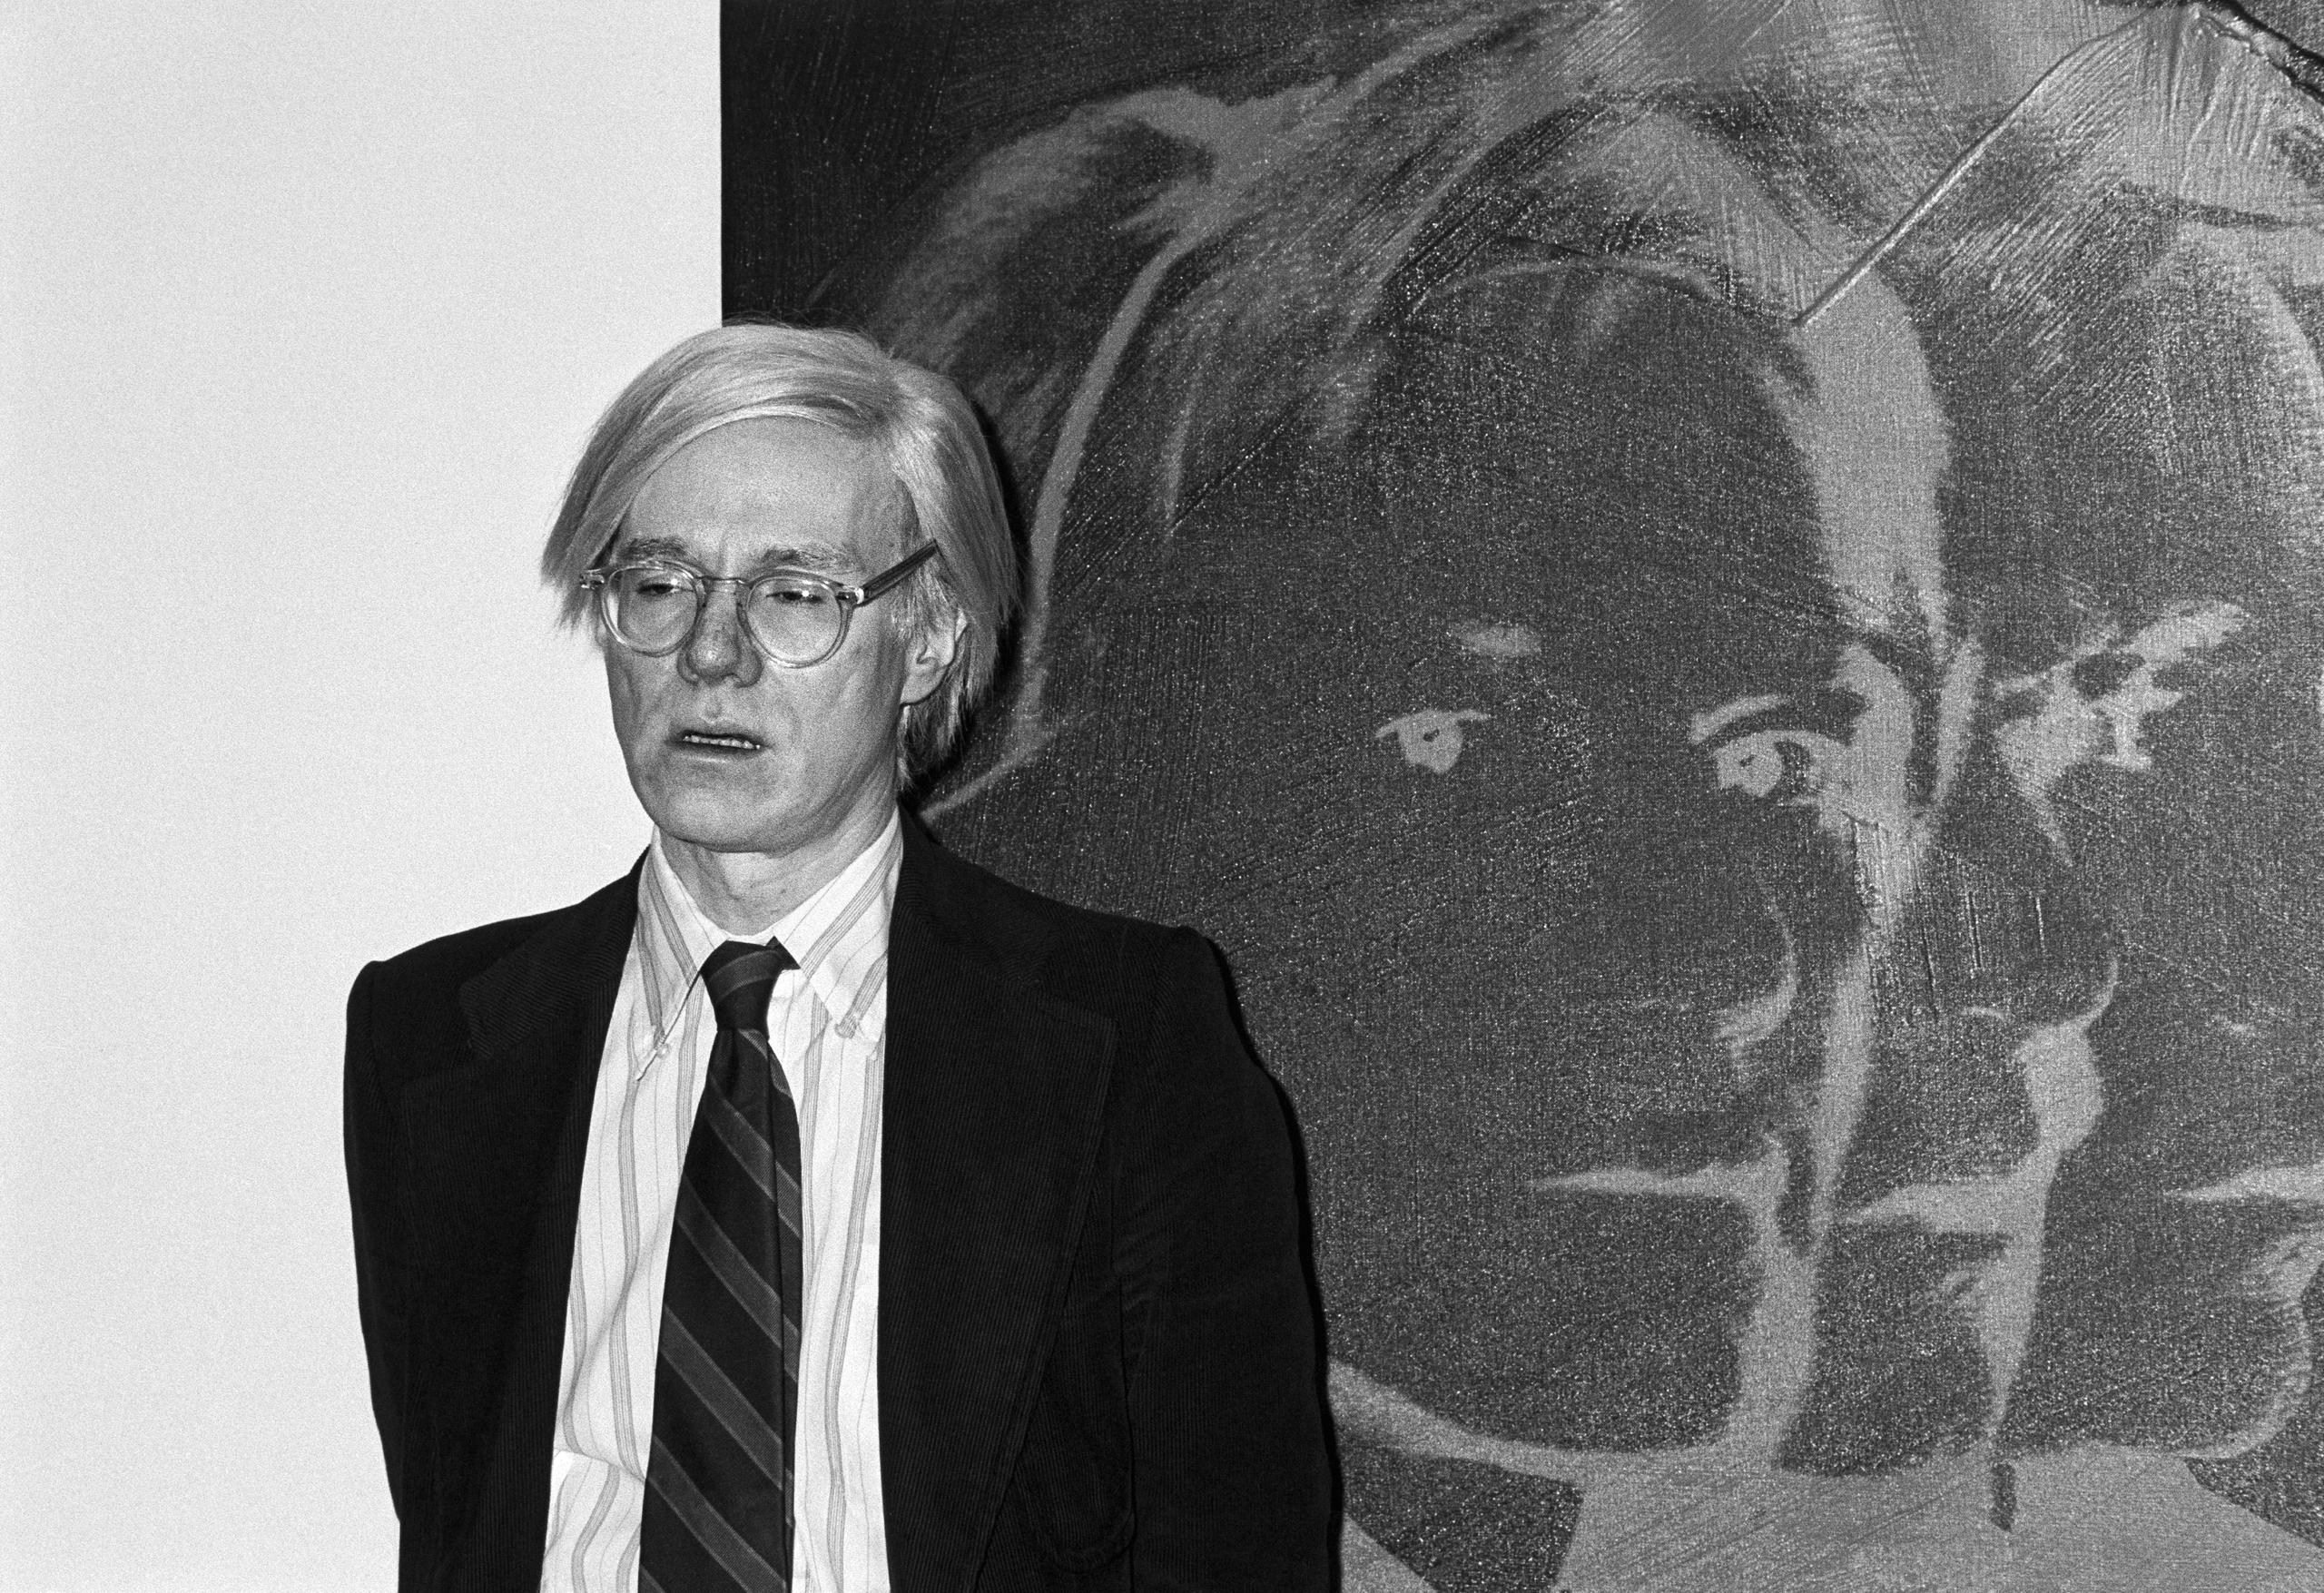 الفنان الأمريكي أندي وارهول يقف أمام عمله بورتريه ذاتي أثناء معرض أقيم في زيورخ